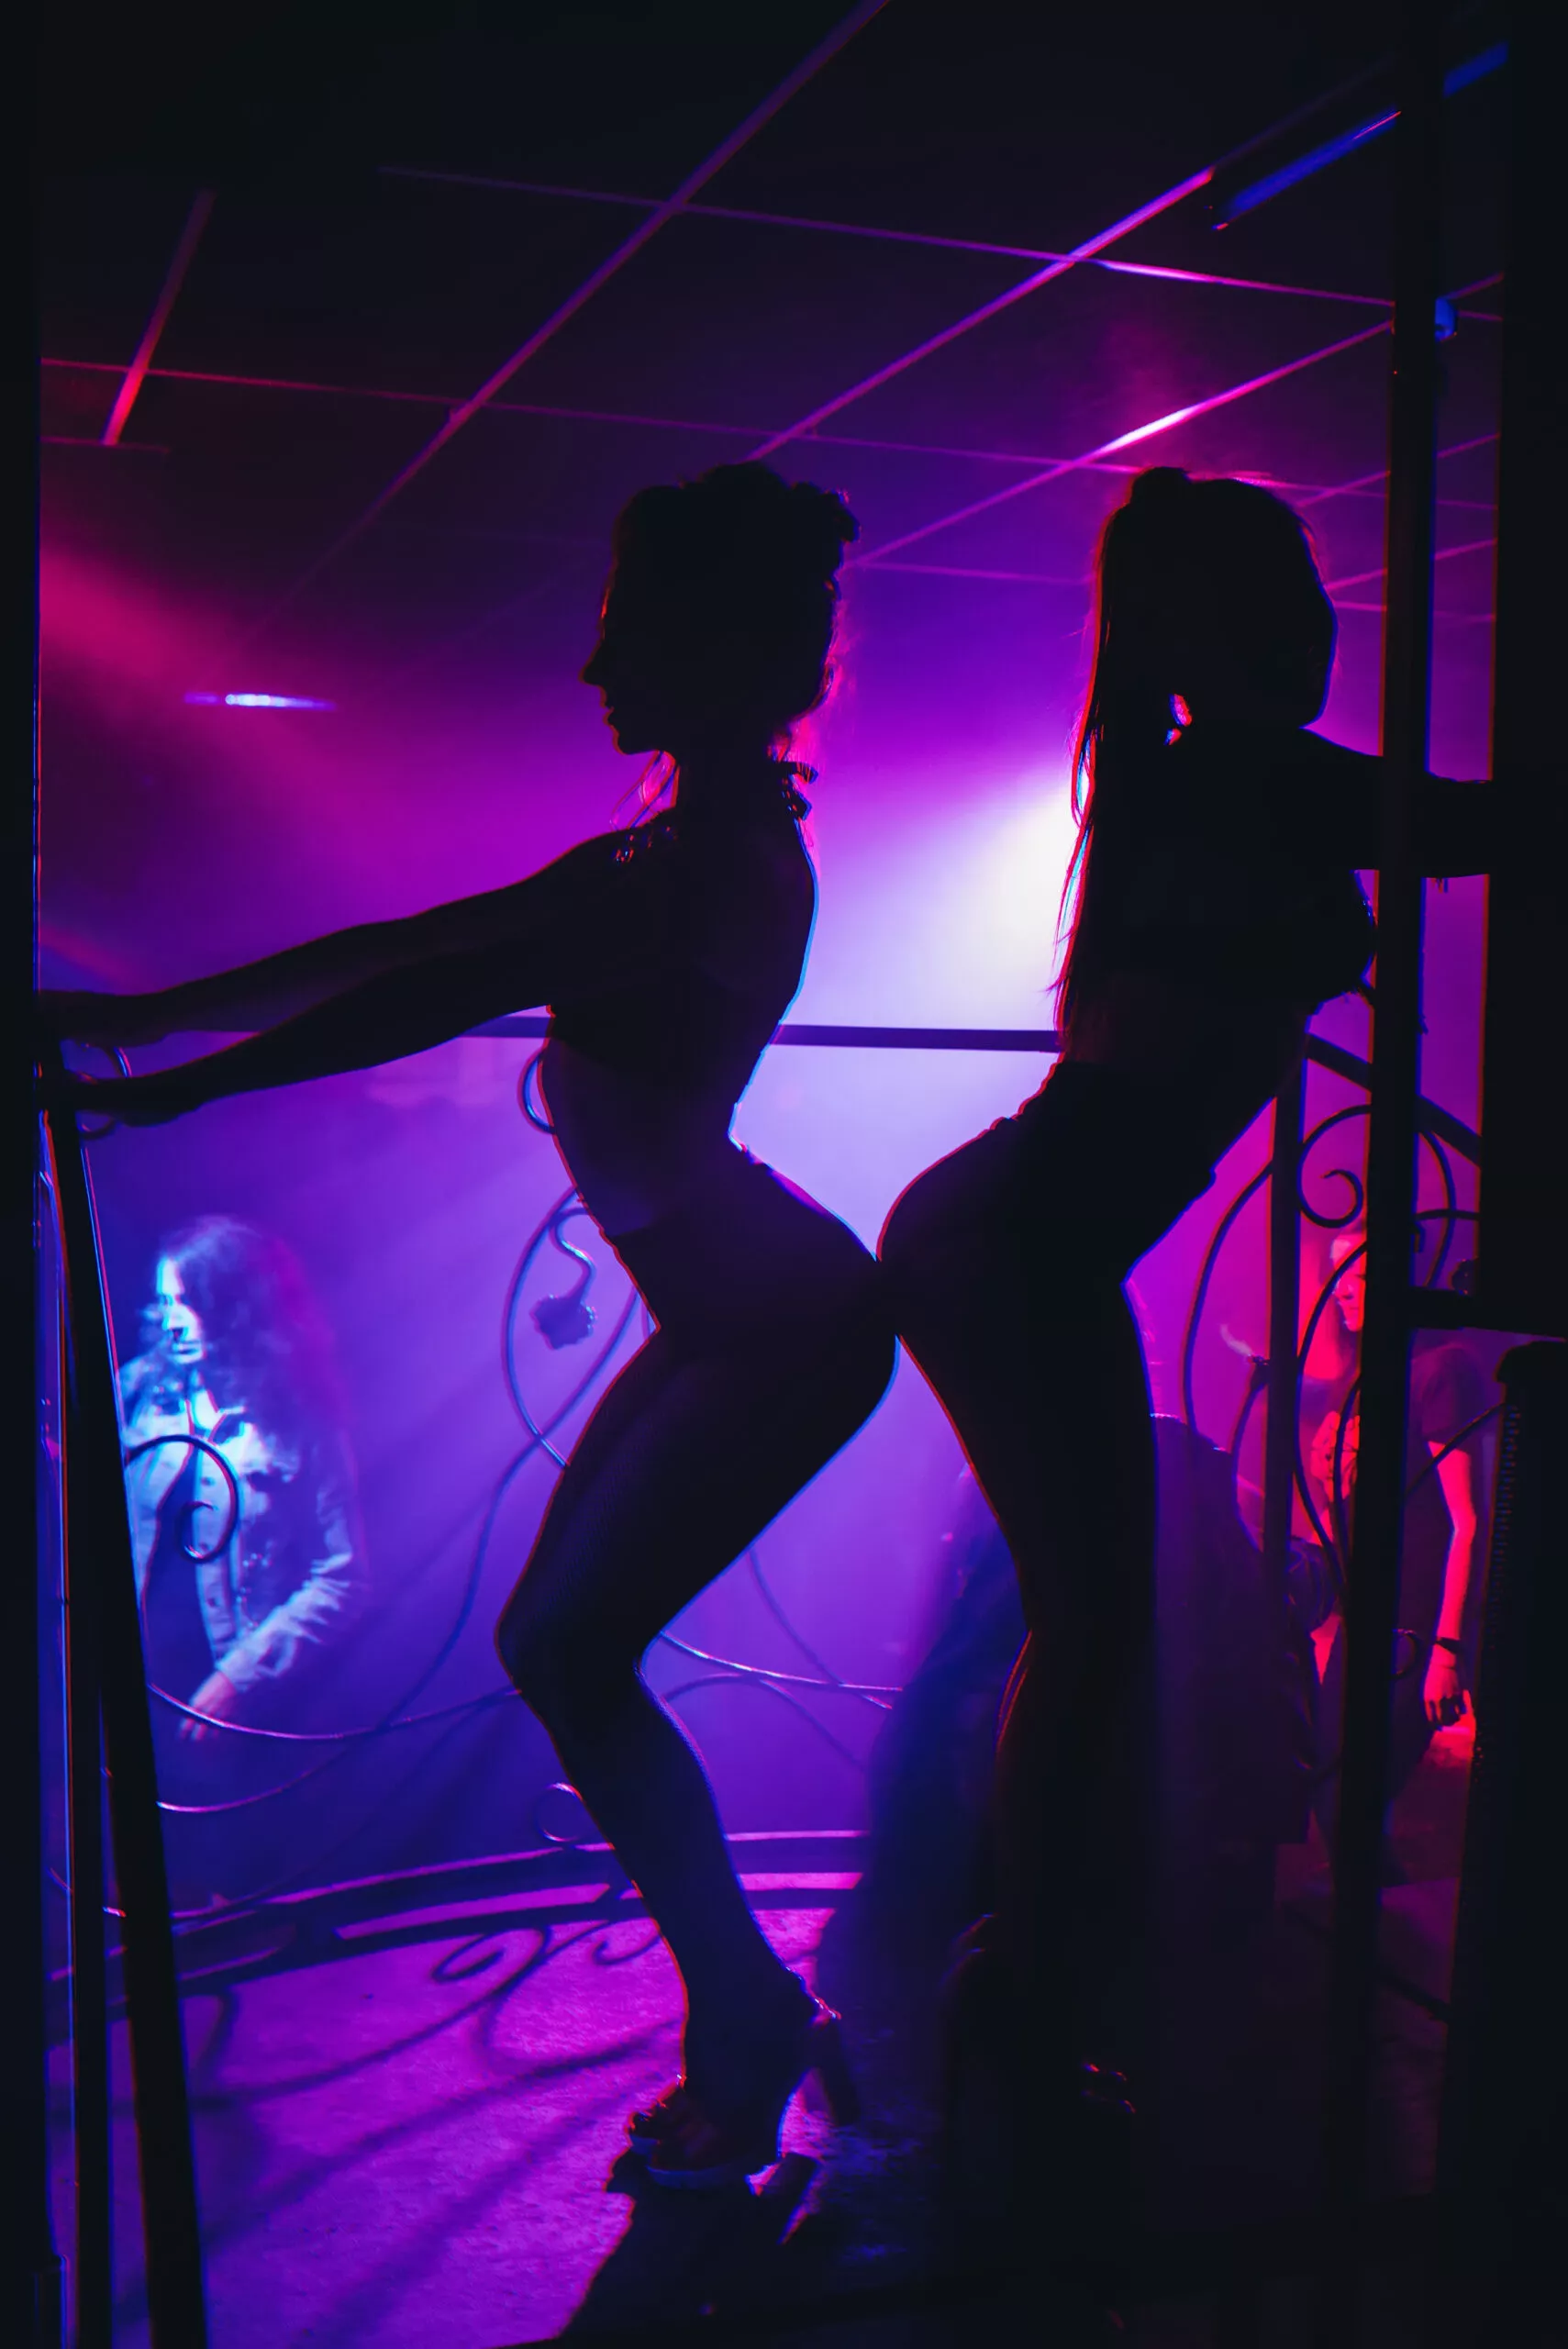 slanke meisjesdanseres in een nachtclub die op het podium poseert